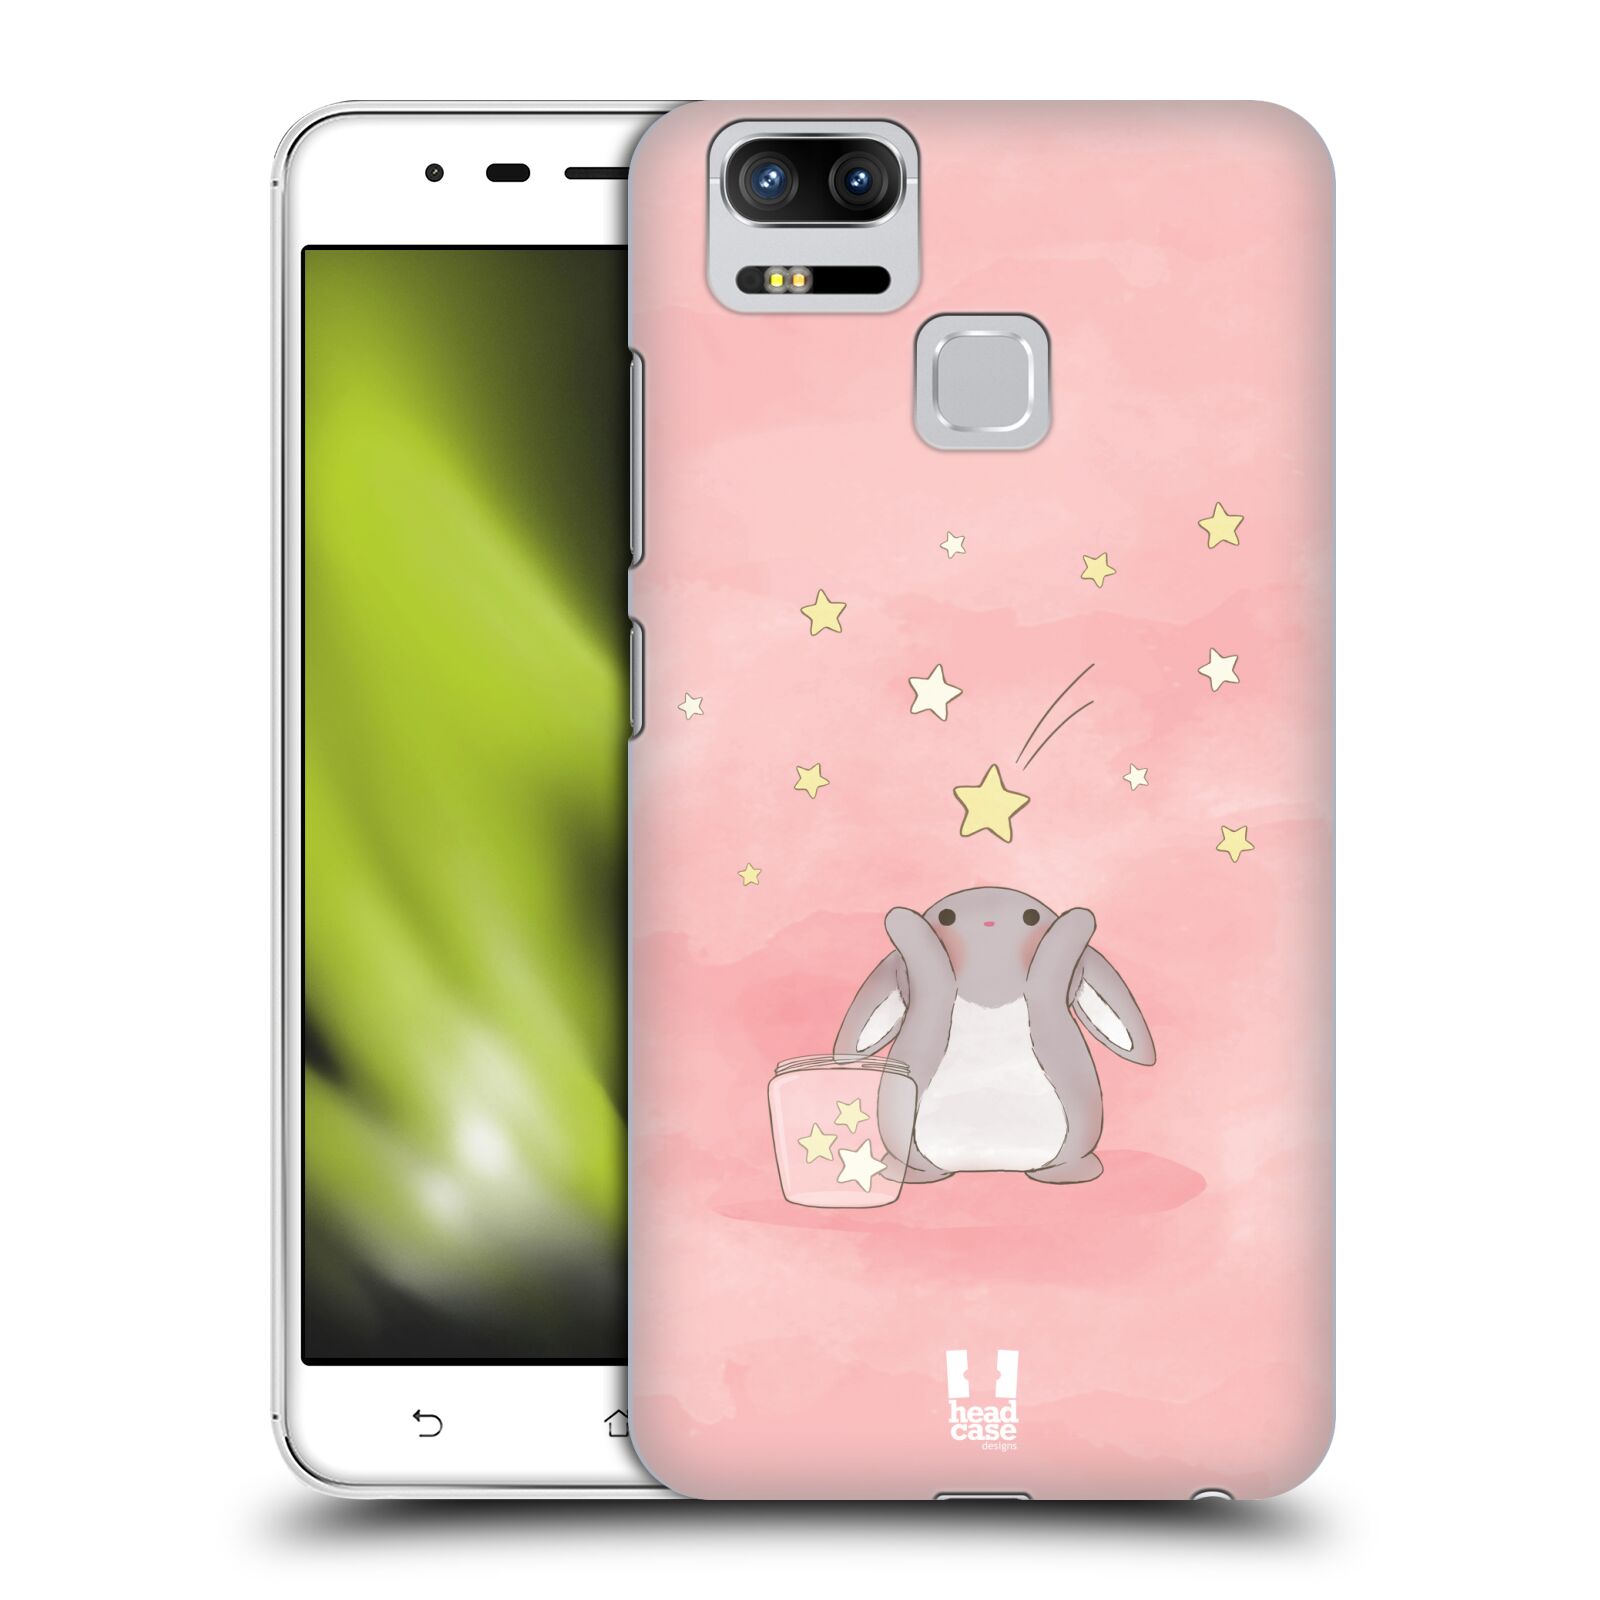 HEAD CASE plastový obal na mobil Asus Zenfone 3 Zoom ZE553KL vzor králíček a hvězdy růžová